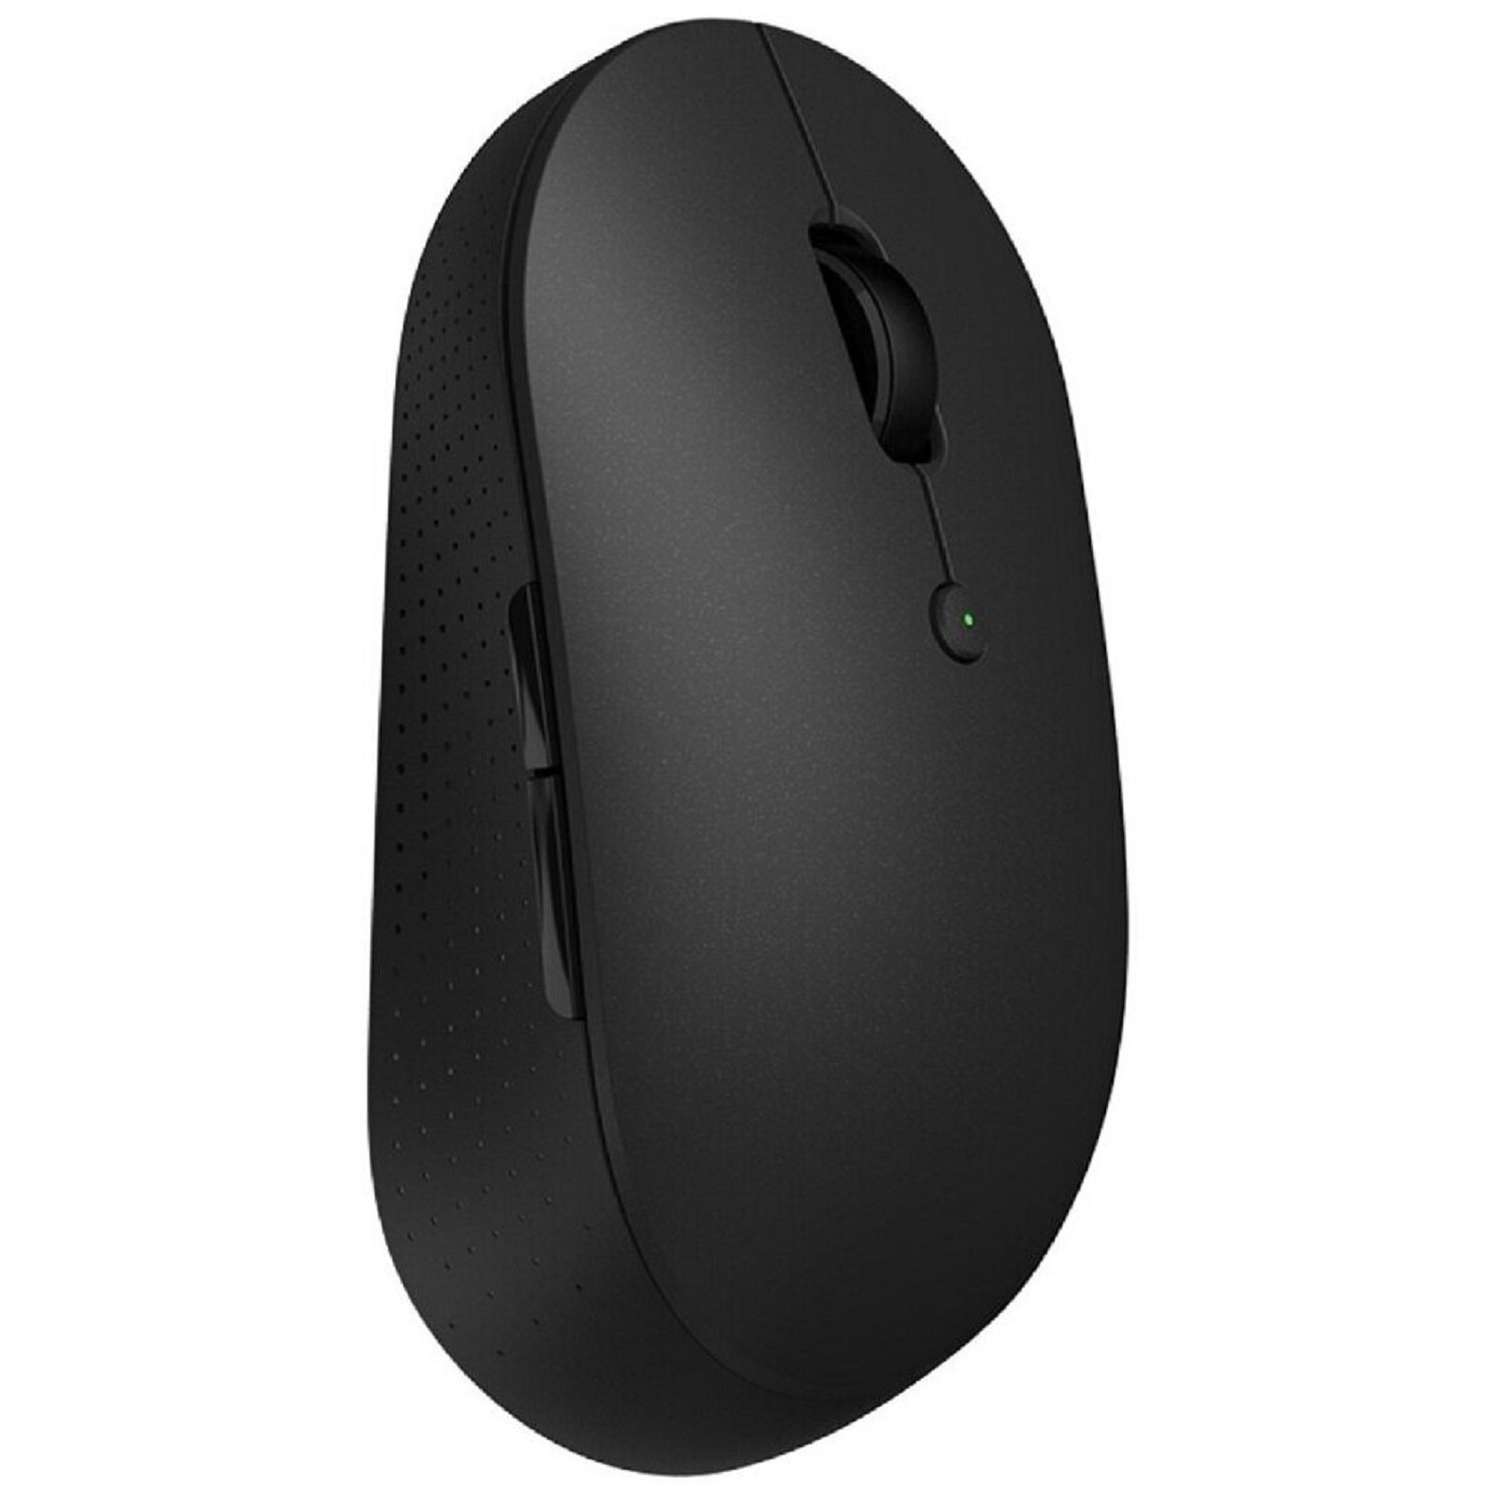 Мышь XIAOMI Mi Dual Mode Wireless Mouse Silent Edition беспроводная 1300 dpi usb чёрная - фото 2